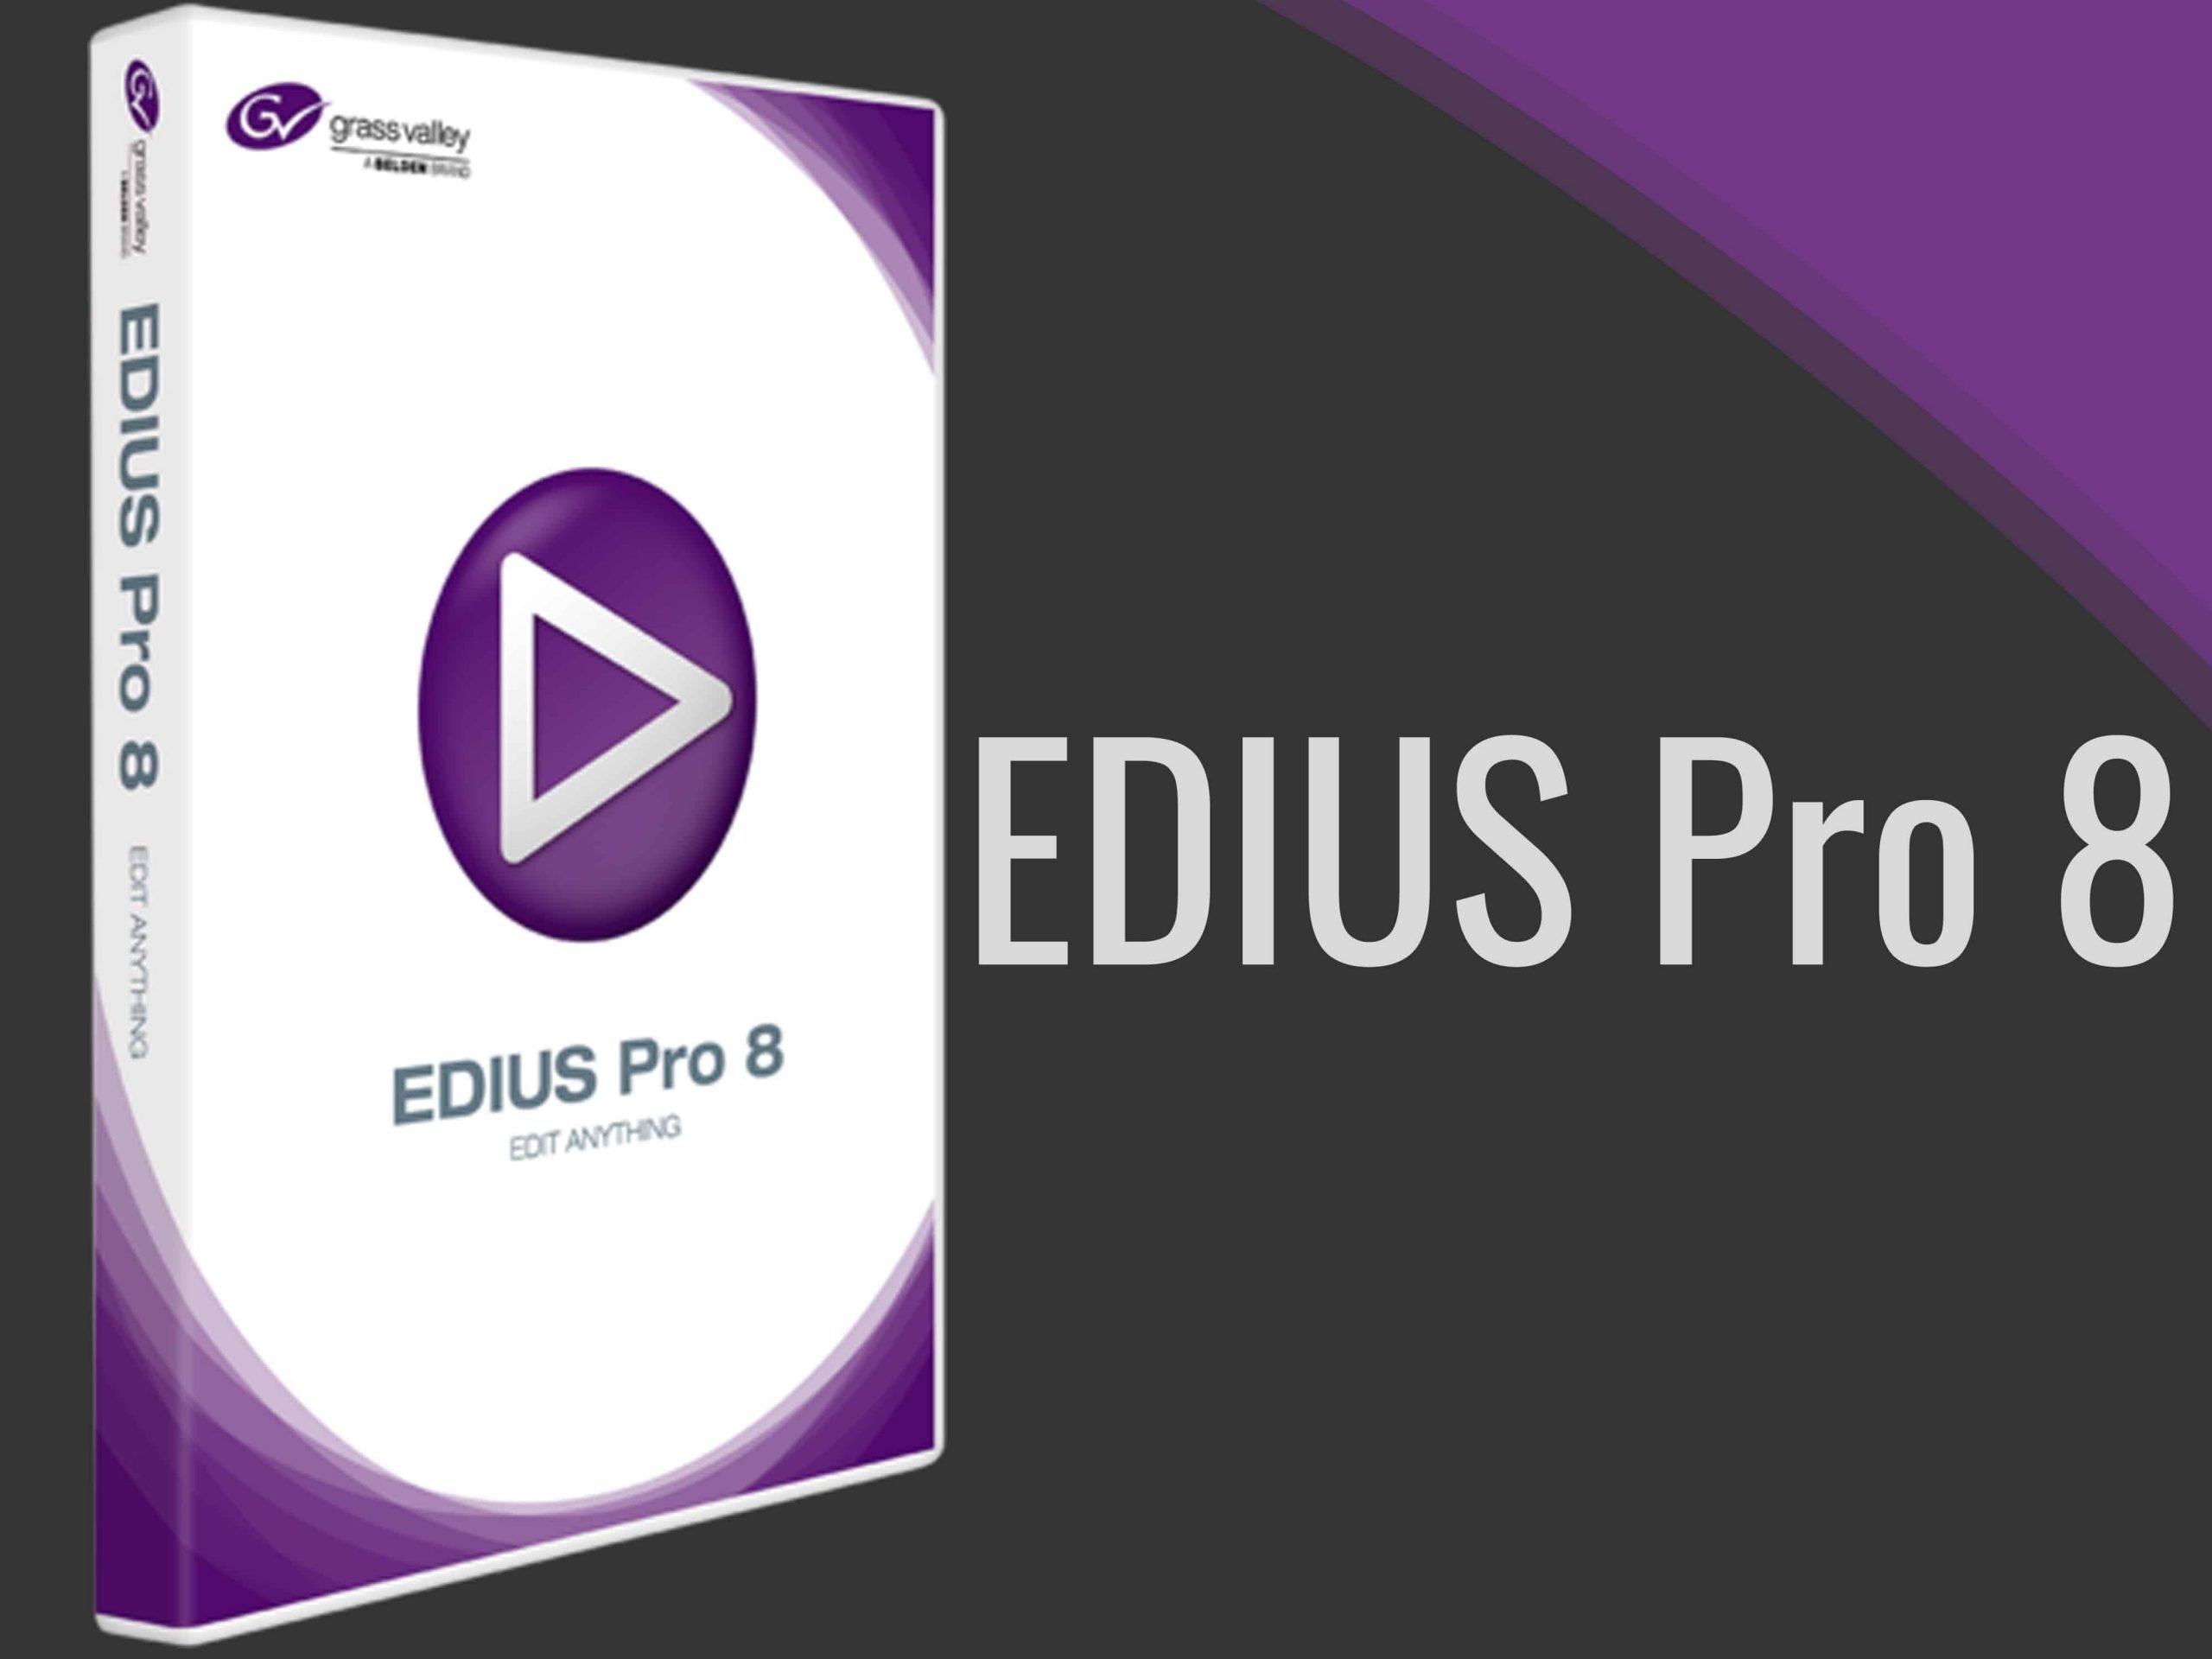 EDIUS 9, Satyam Film, Edius Pro 8, Edius Pro 9, EDIUS Wedding Projects, Video Editing, Video Mixing